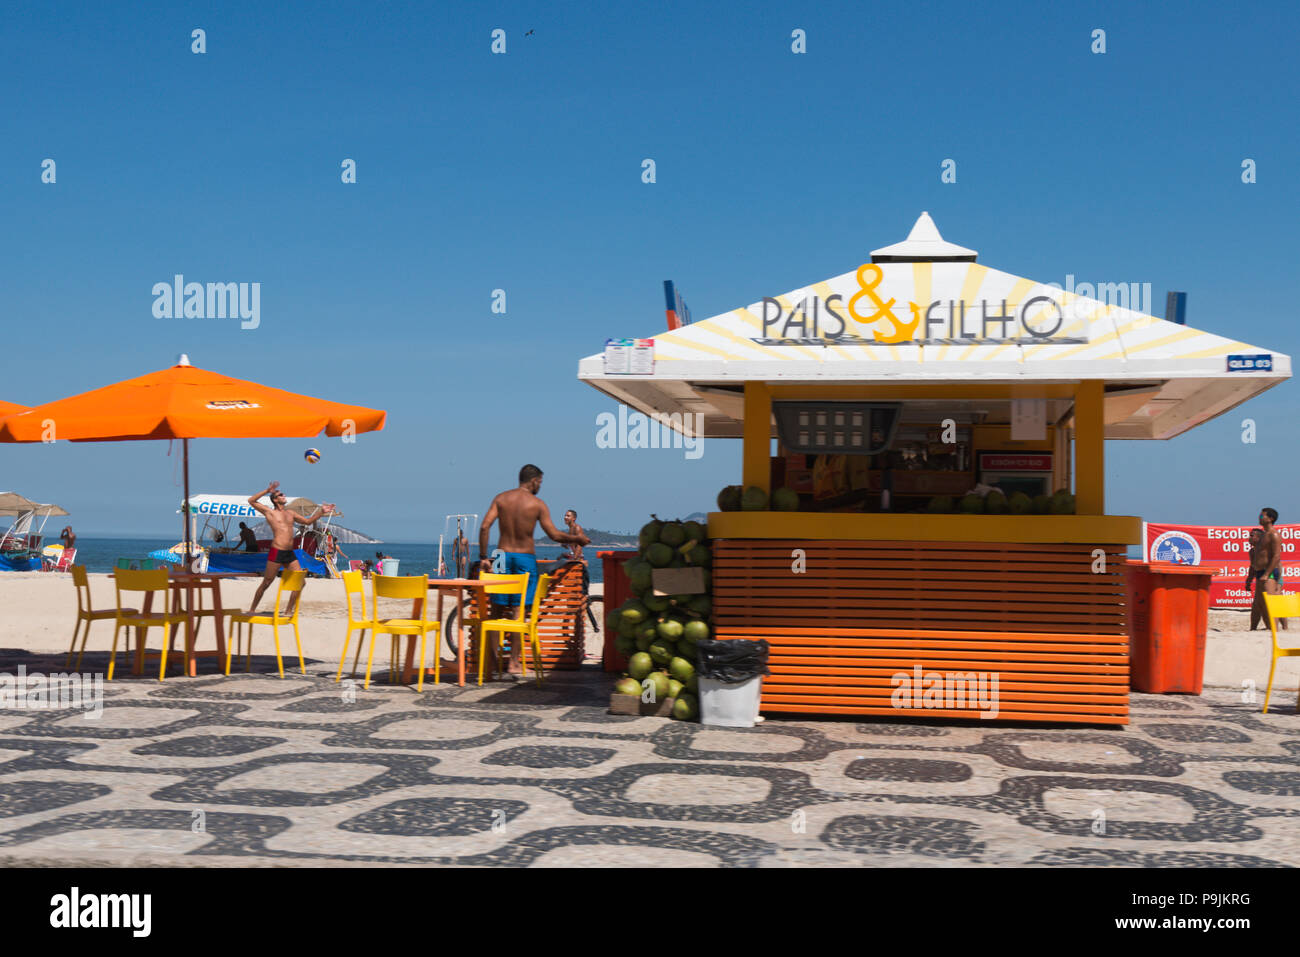 Kiosques sur la plage d'Ipanema, Rio de Janeiro, Brésil Banque D'Images